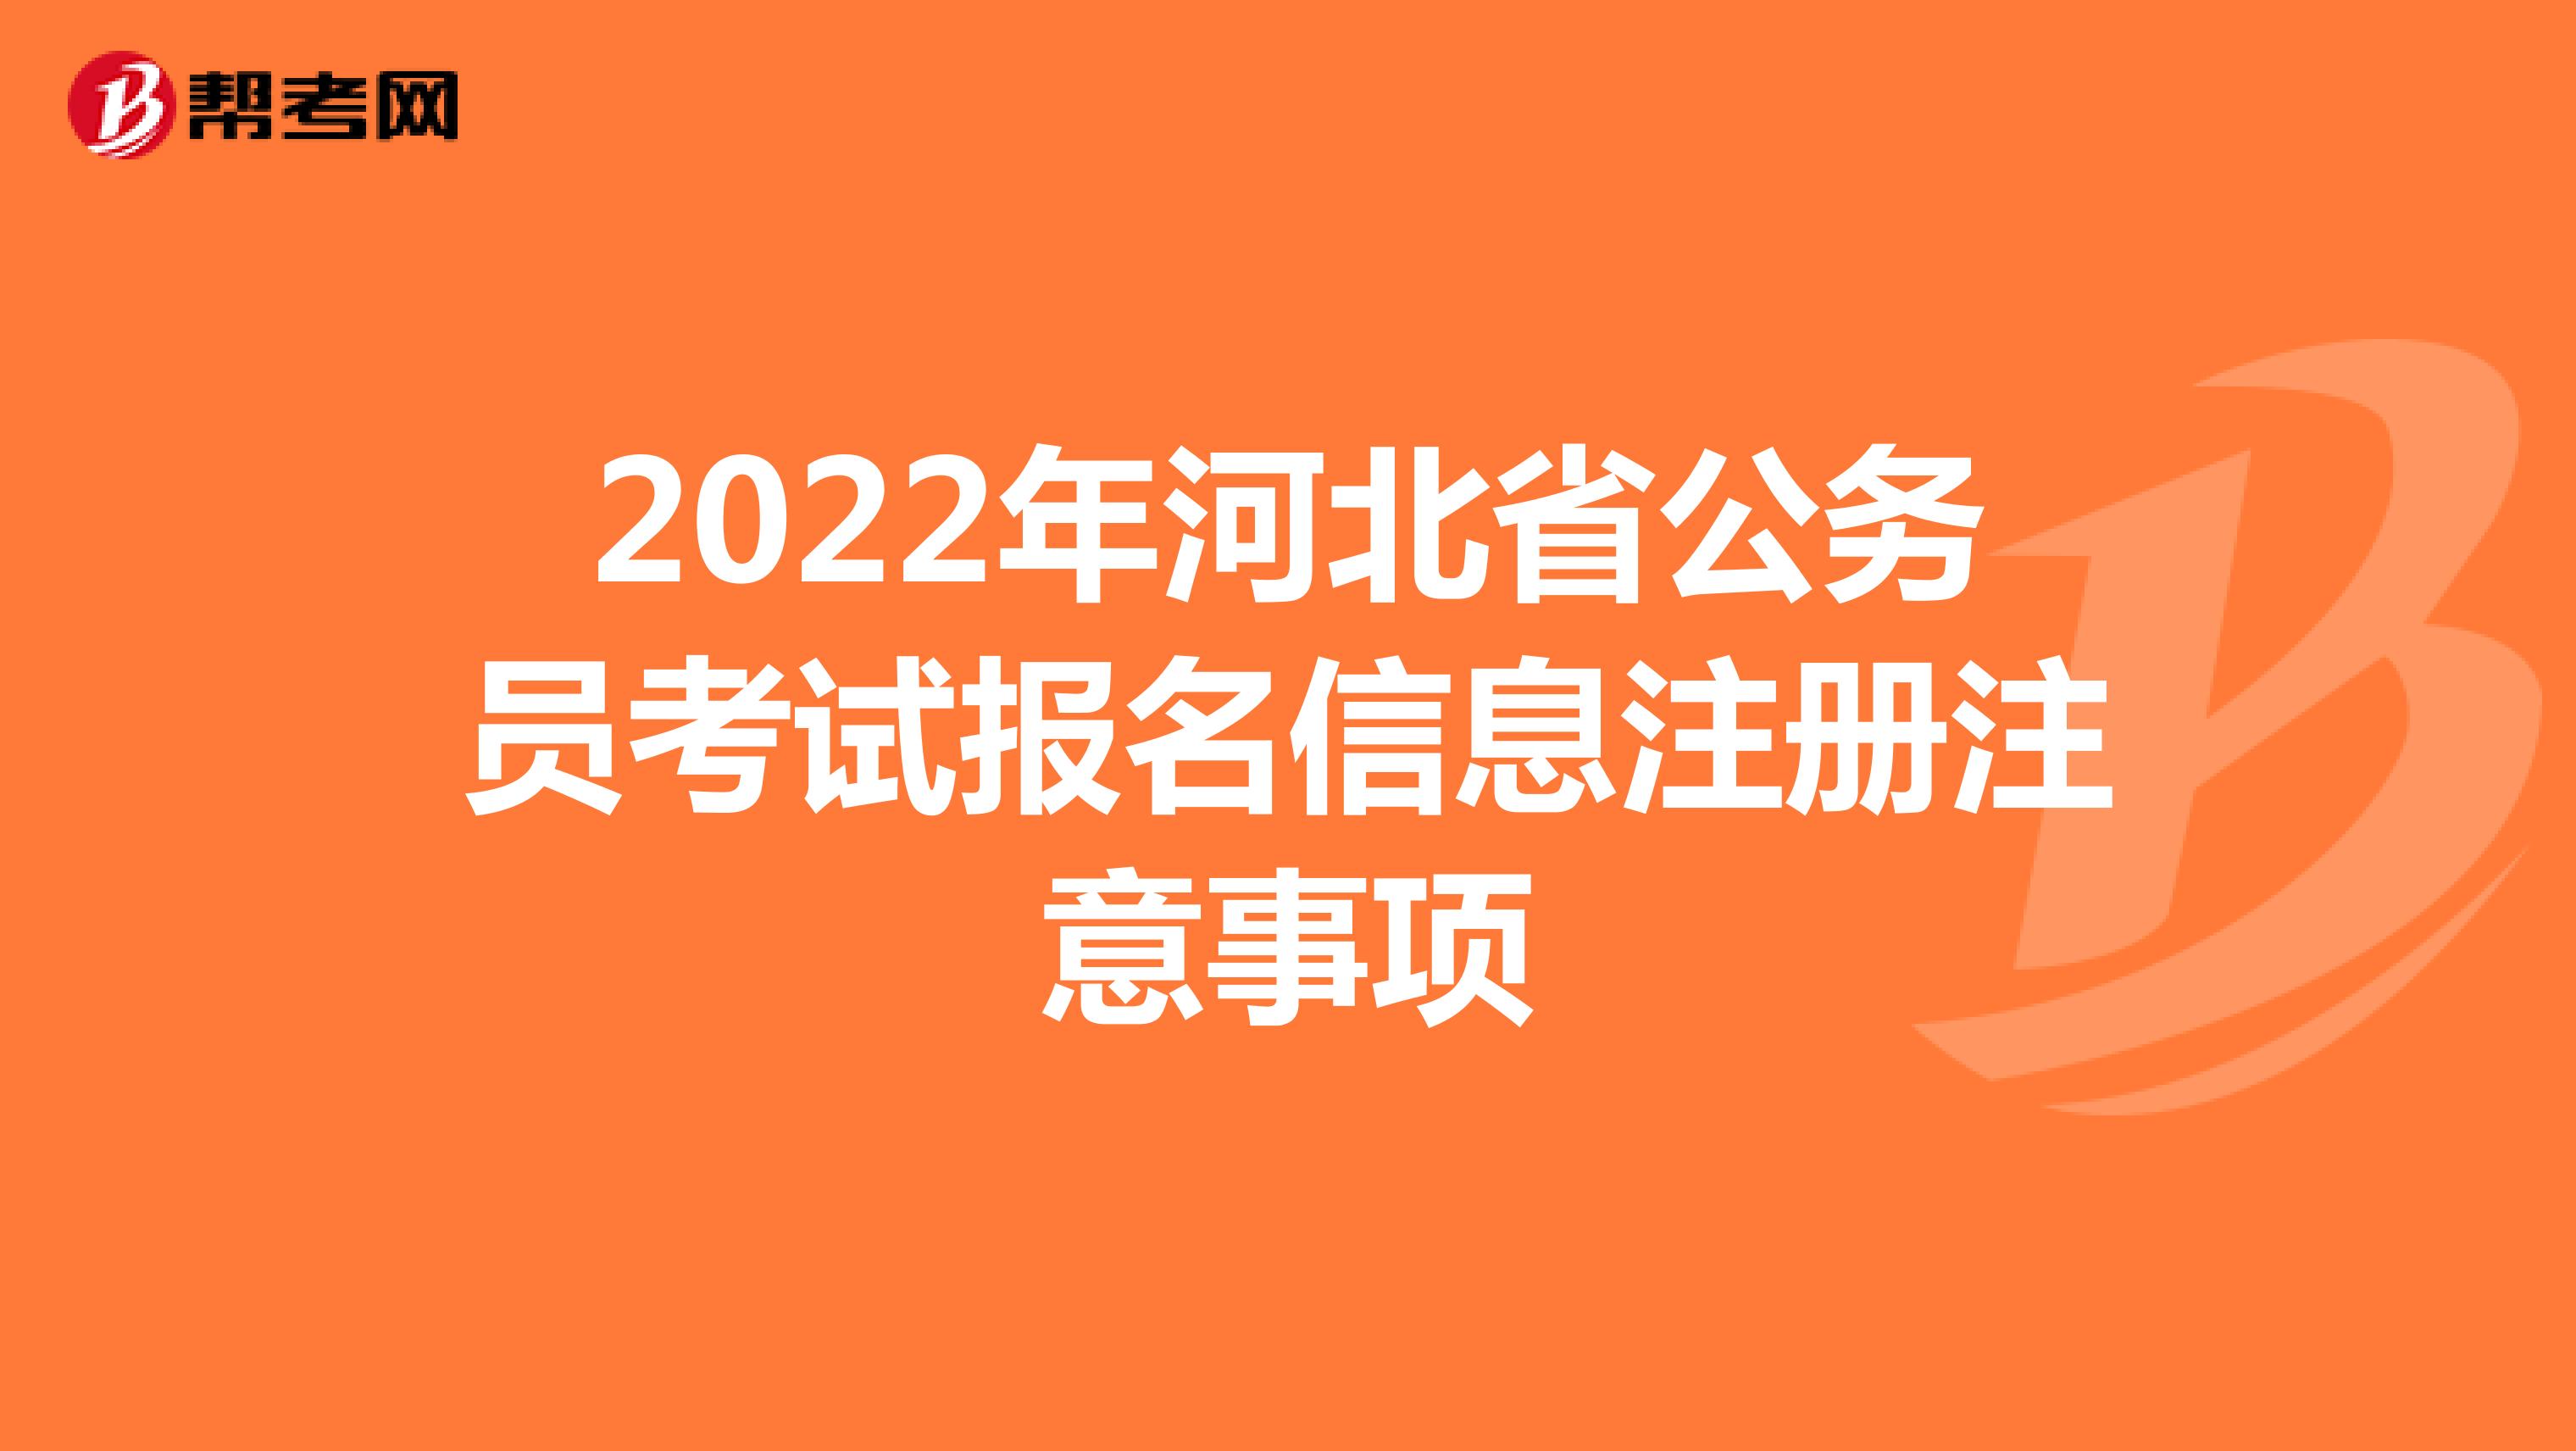 2022年河北省公务员考试报名信息注册注意事项